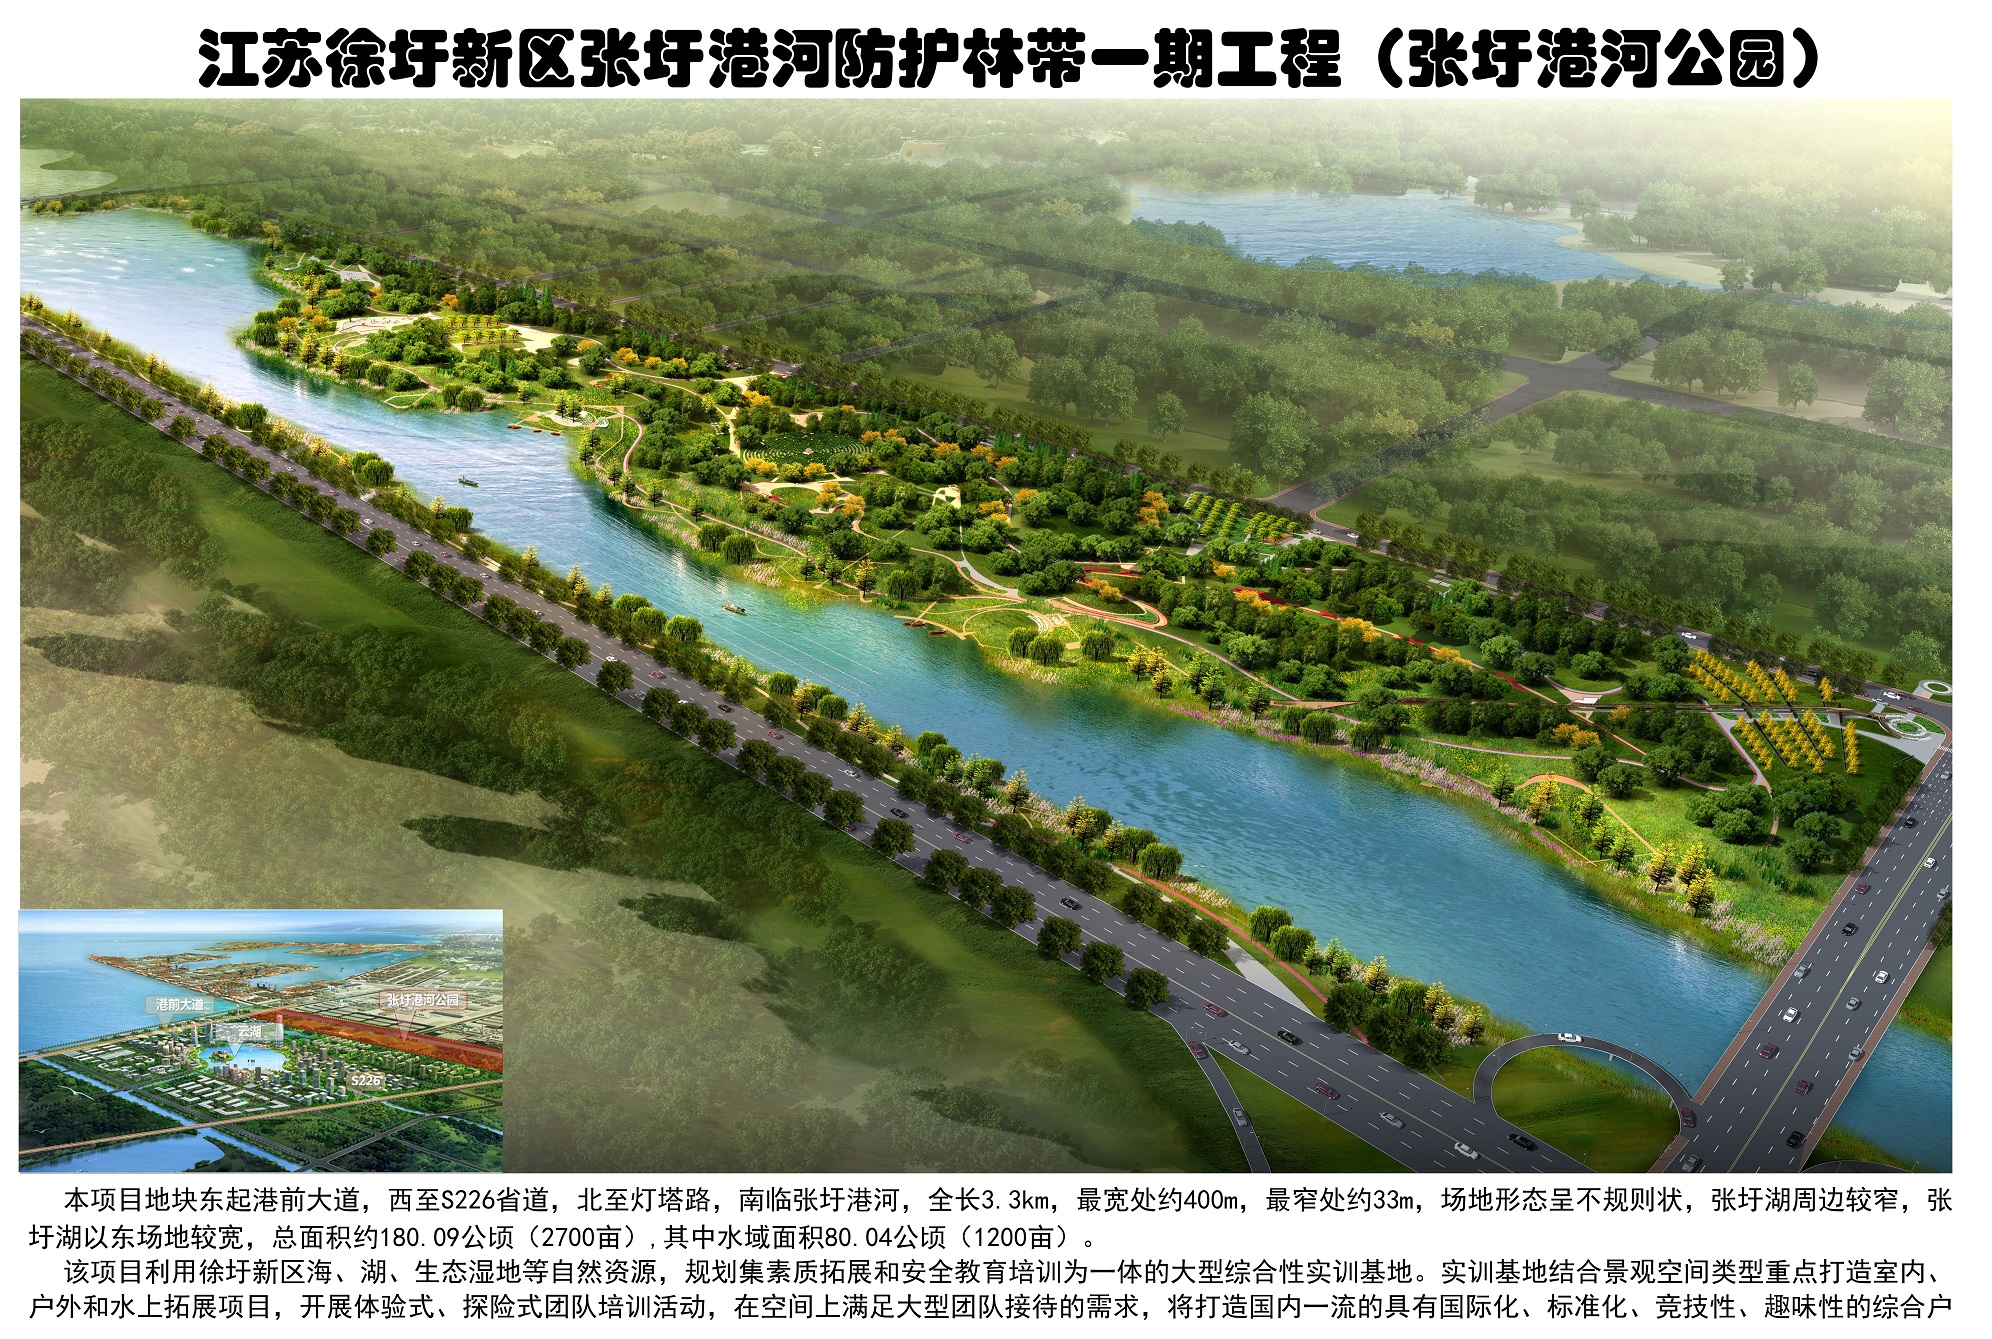 张圩港河北岸综合绿地公园(图1)